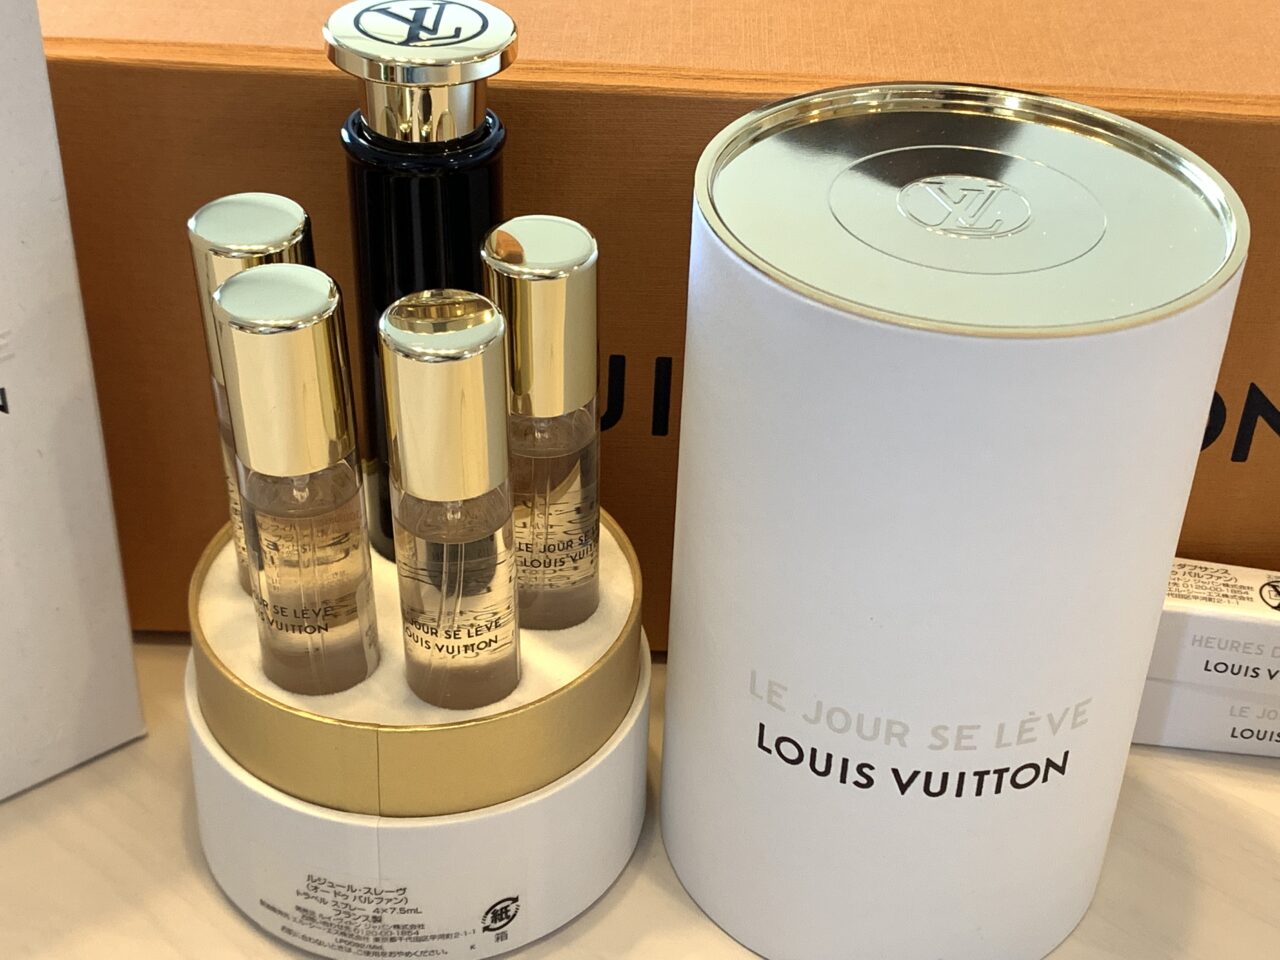 コスメ/美容LOUIS VUITTON 香水 トラベル用レフィル